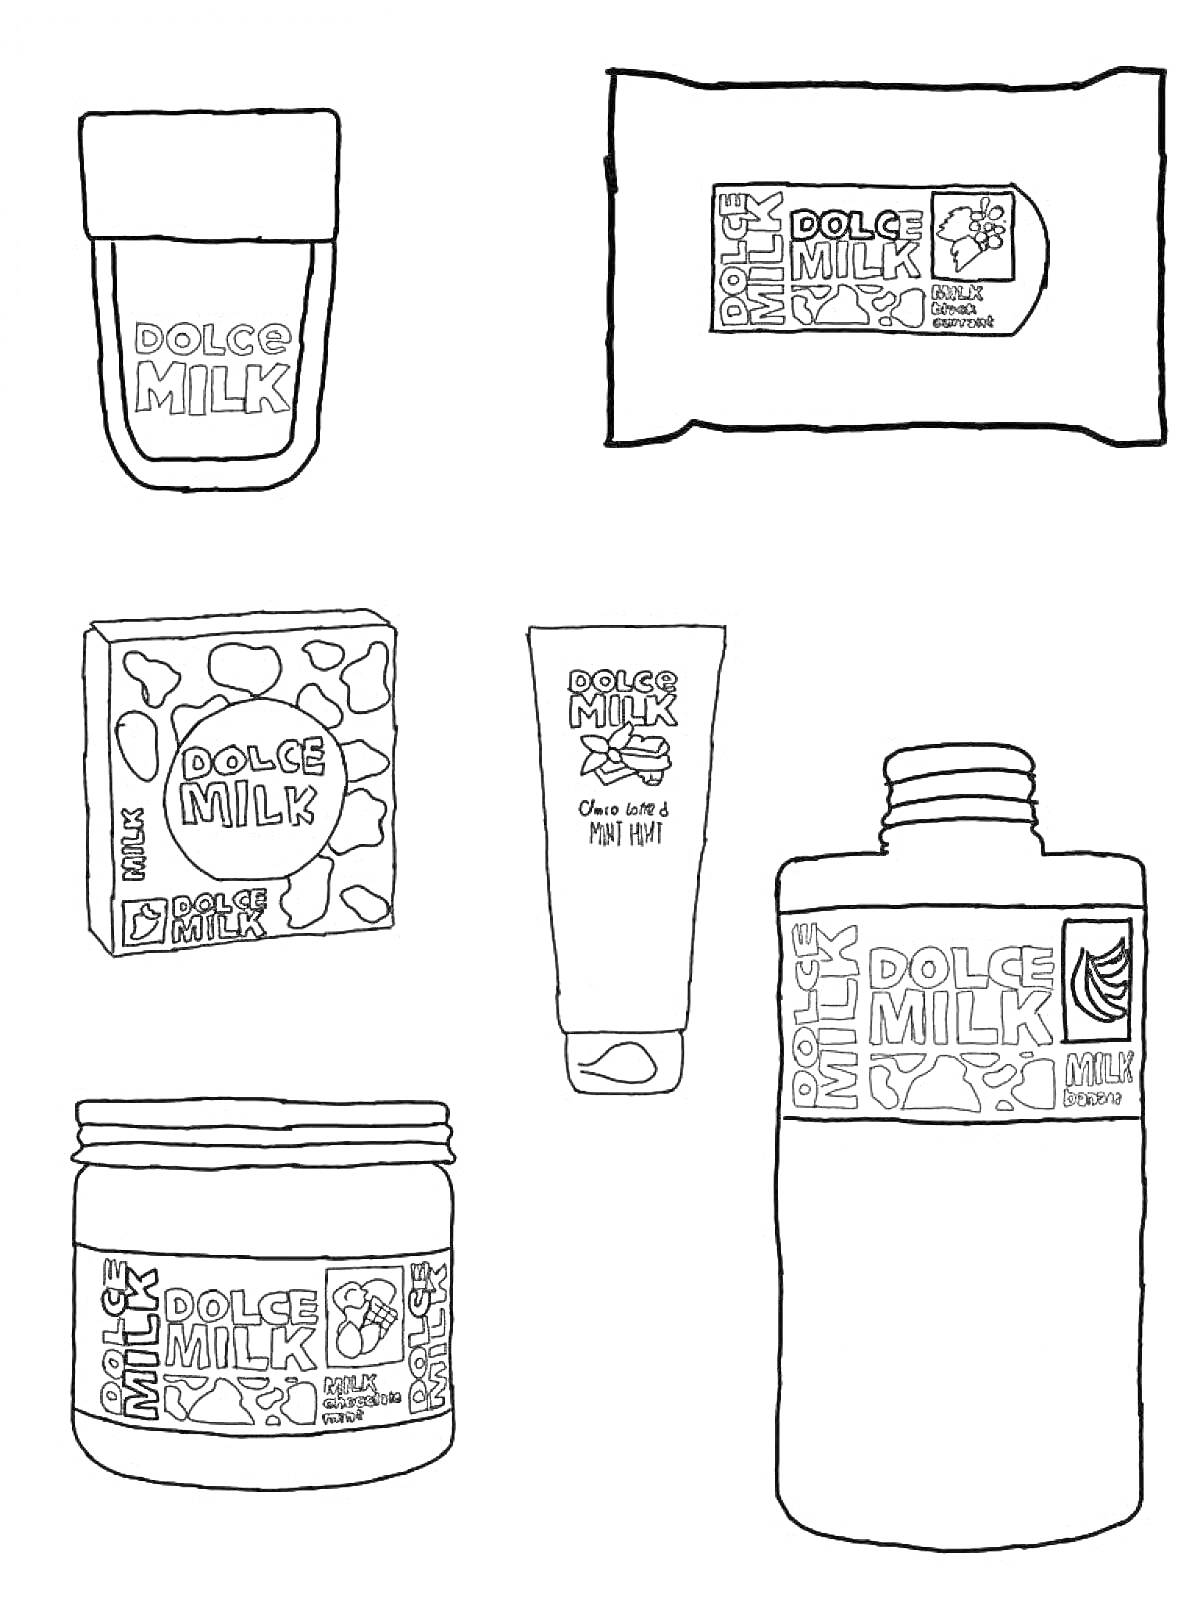  Набор продуктов Dolce Milk, включающий тюбик, влажные салфетки, коробку, крем, баночку и бутылку